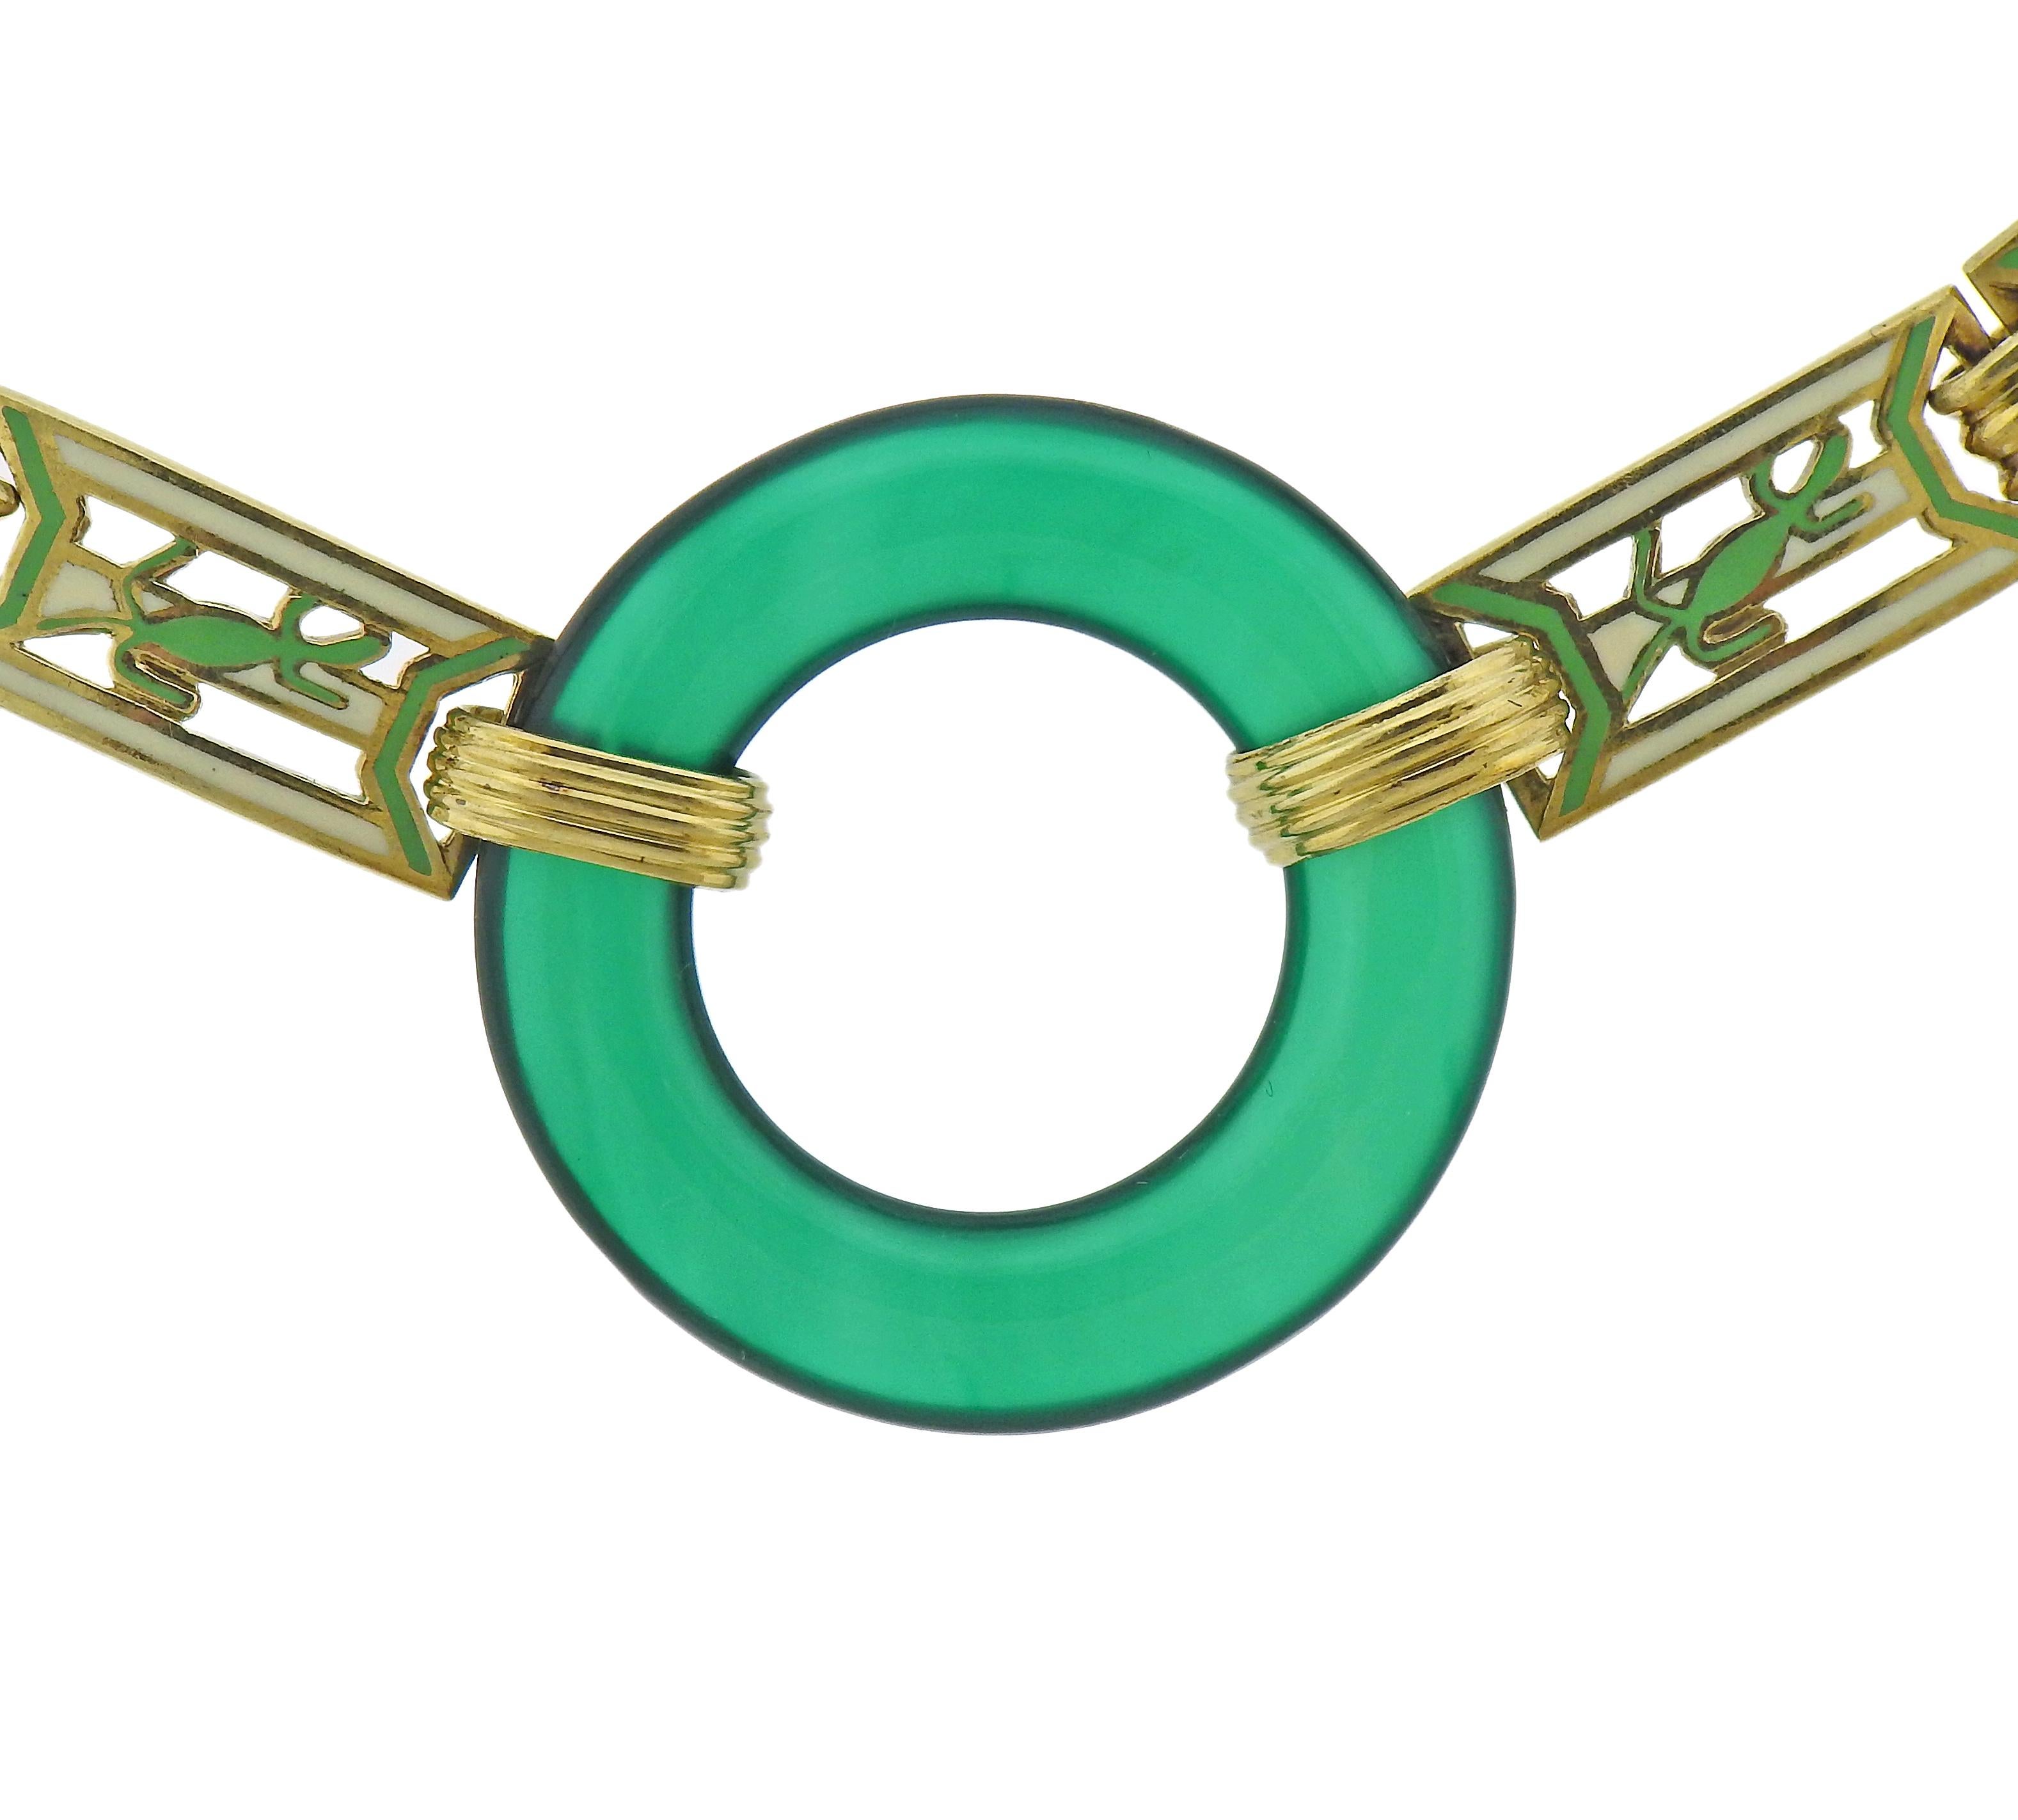 Art-Deco-Halskette aus 14-karätigem Gold mit Chrysopras und Emaille. Die Halskette ist 14